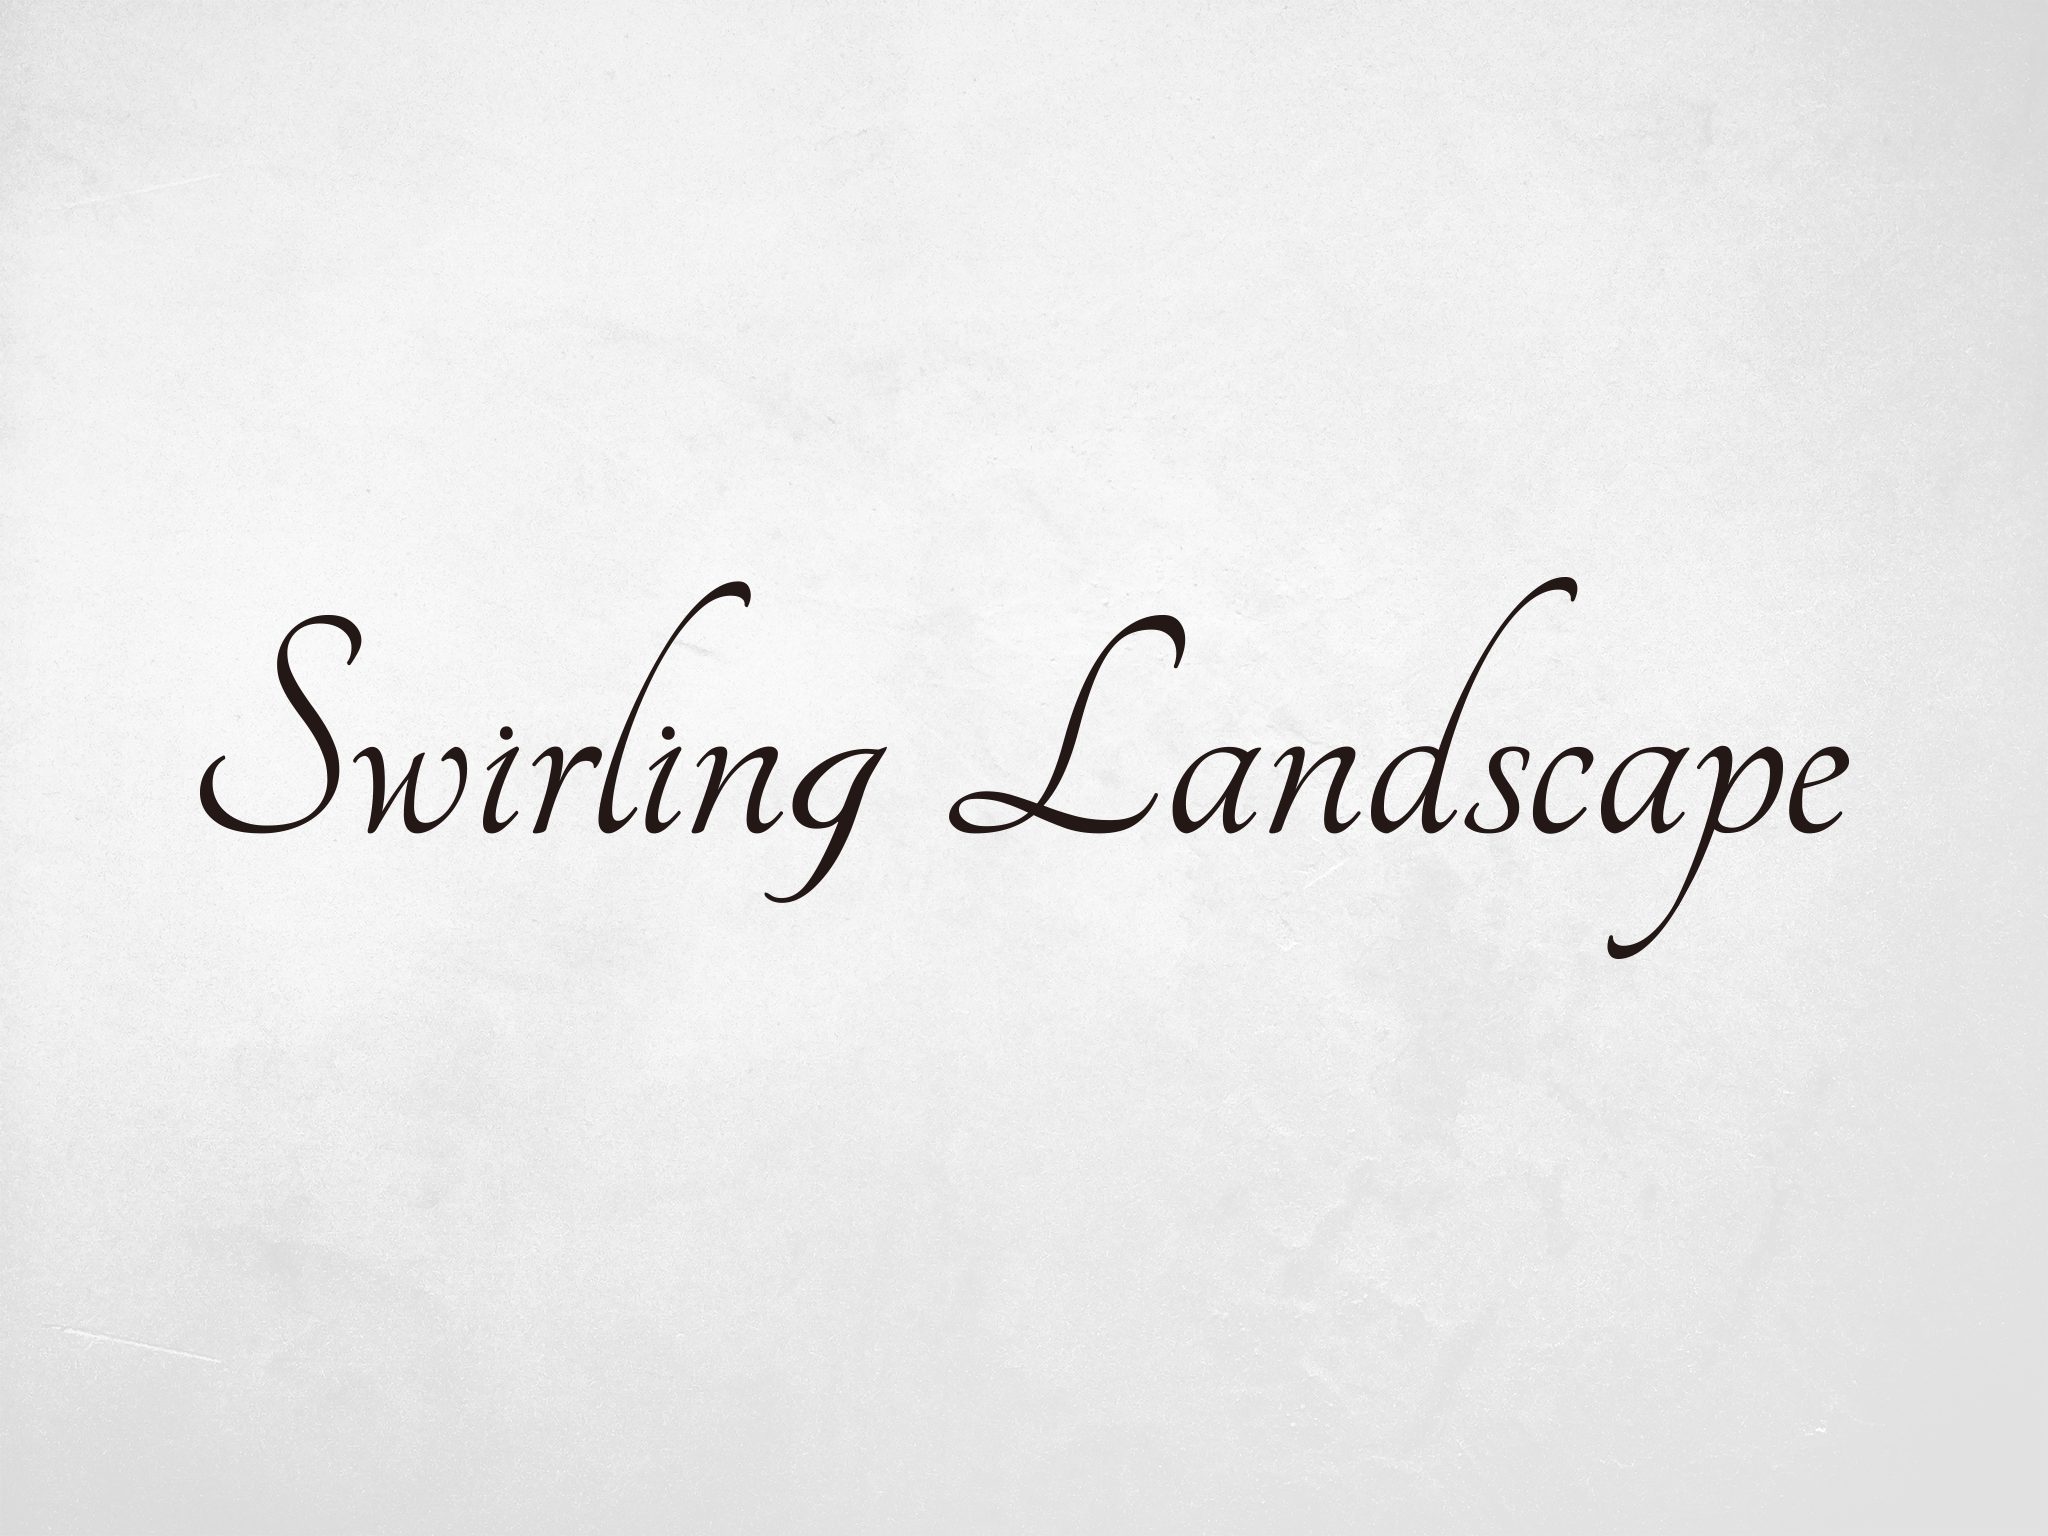 SWIRLING LANDSCAPE LOGO